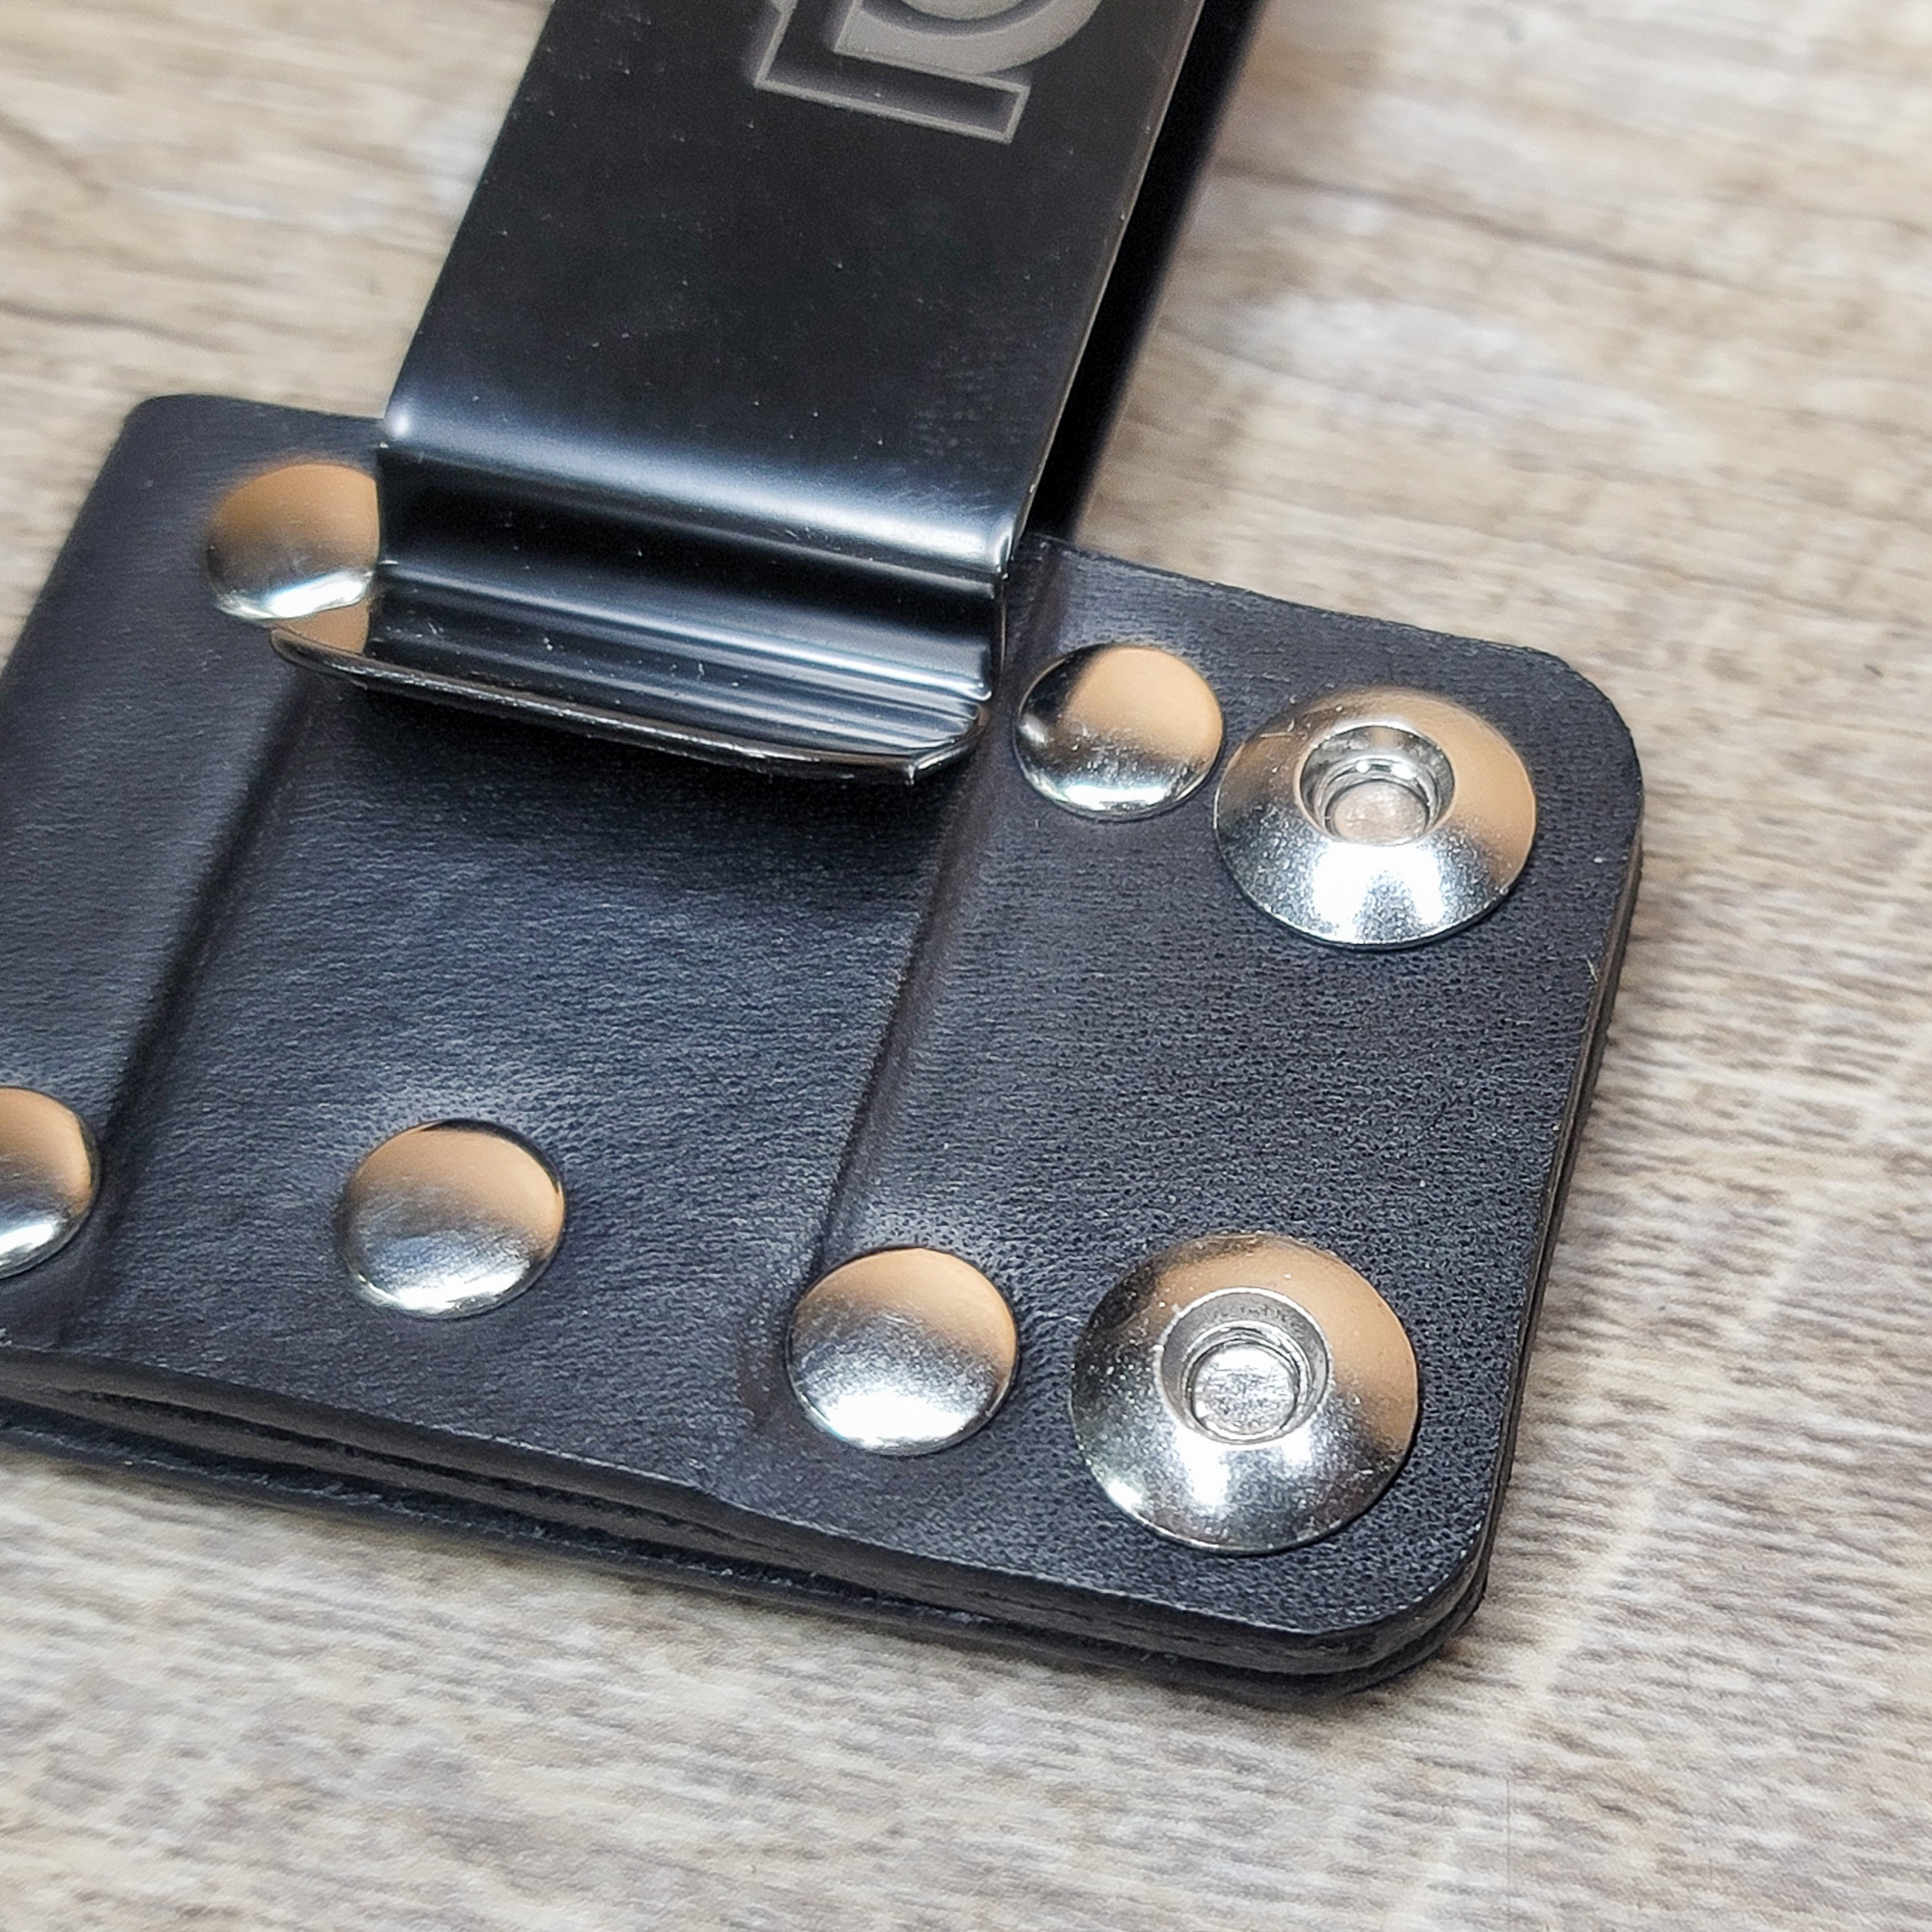 Leather Sheath Belt Clip Adapter for Leatherman Gerber SOG